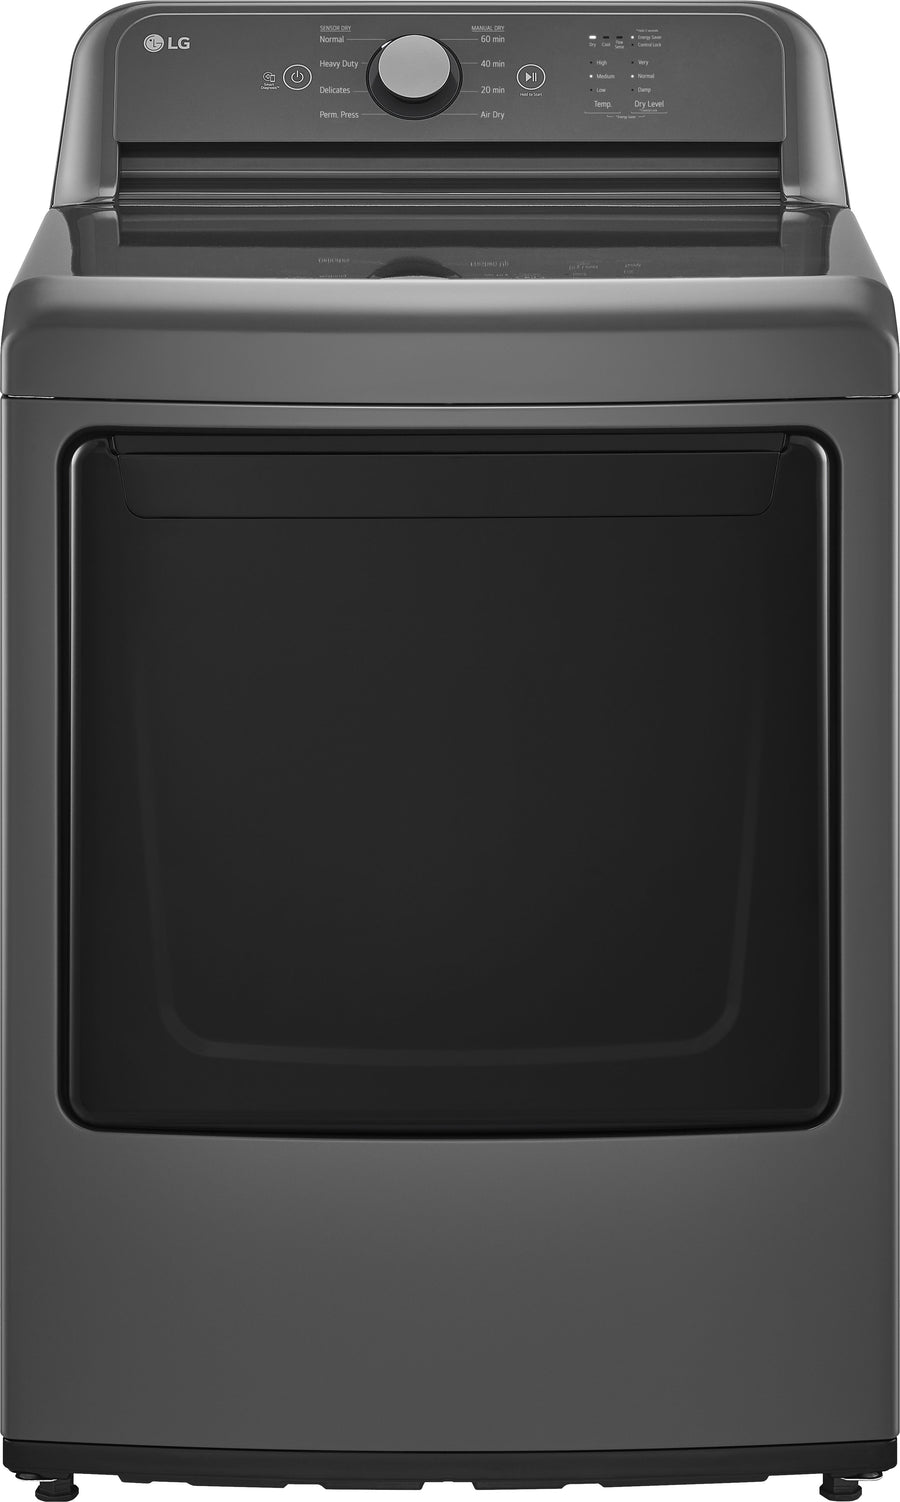 LG - 7.3 Cu. Ft. Gas Dryer with Sensor Dry - Monochrome Grey_0